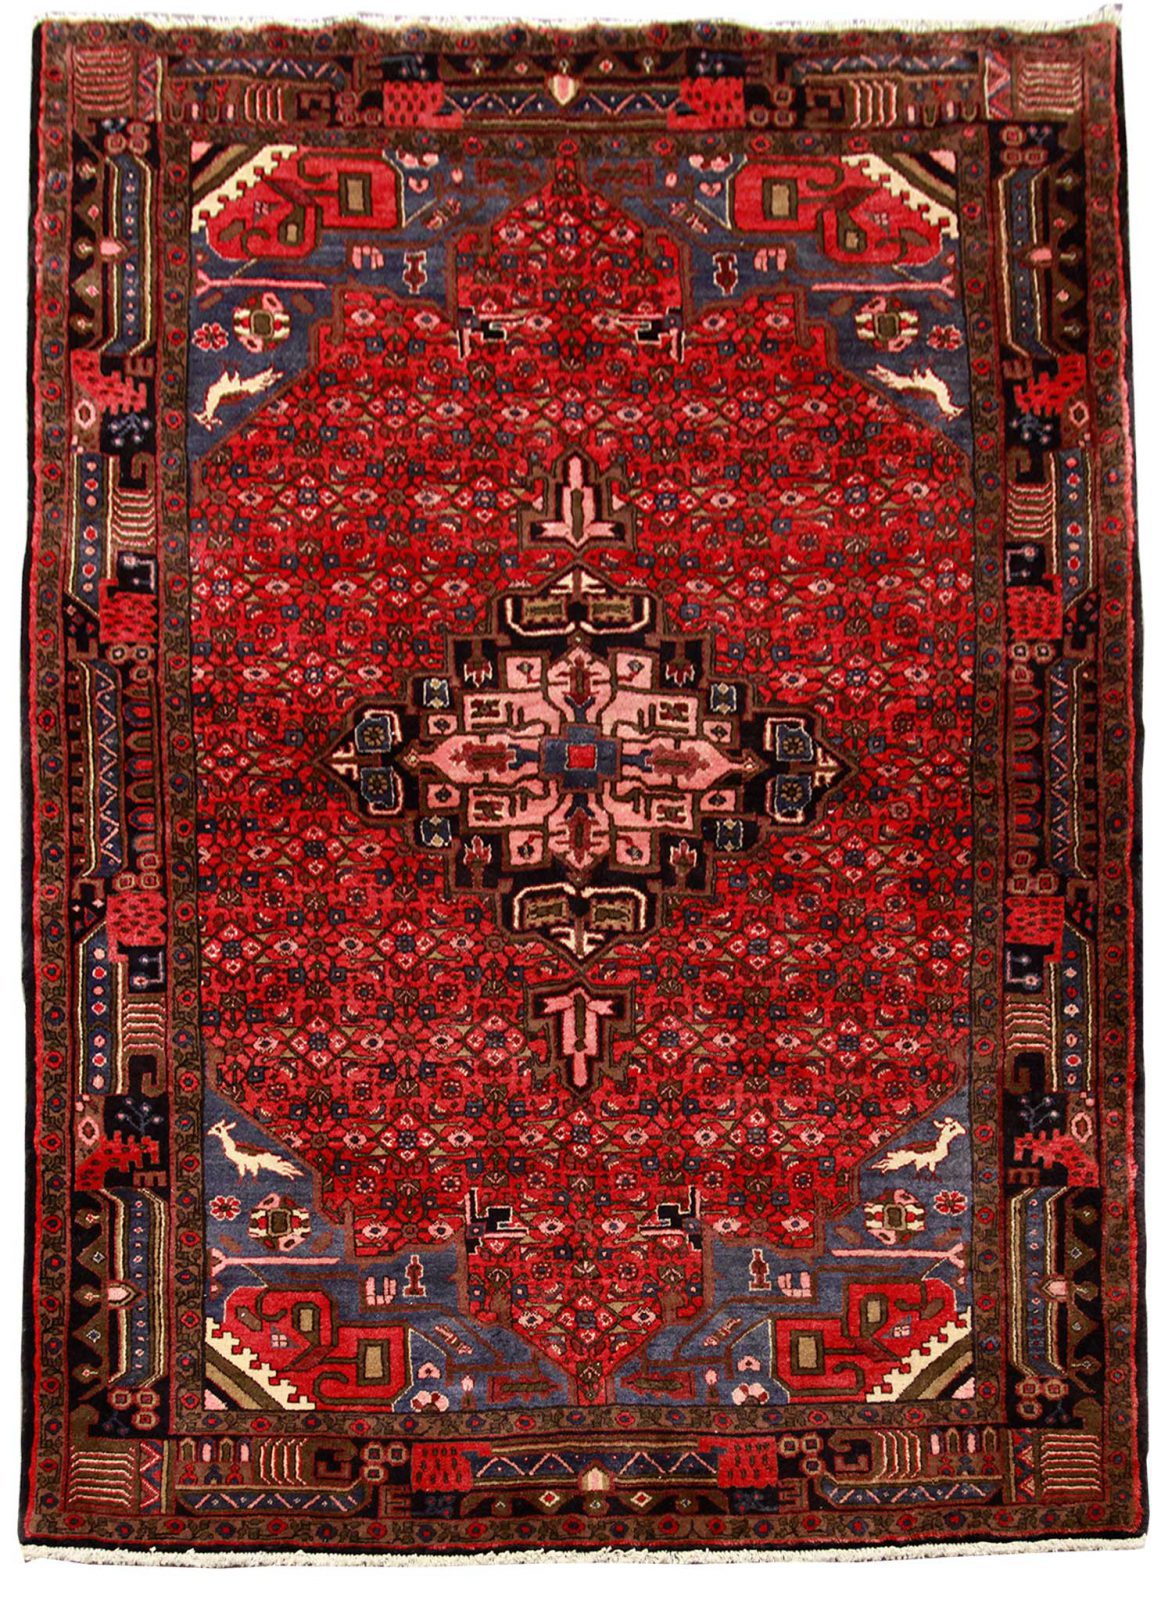 فرش دستباف حسين آباد سنقر طرح ترنجي ماهي سایز پرده اي۲٫۴۲×۱٫۶۳ رنگ زمینه لاكي رنگ حاشیه سرمه اي کد ۴۴۹۰۴